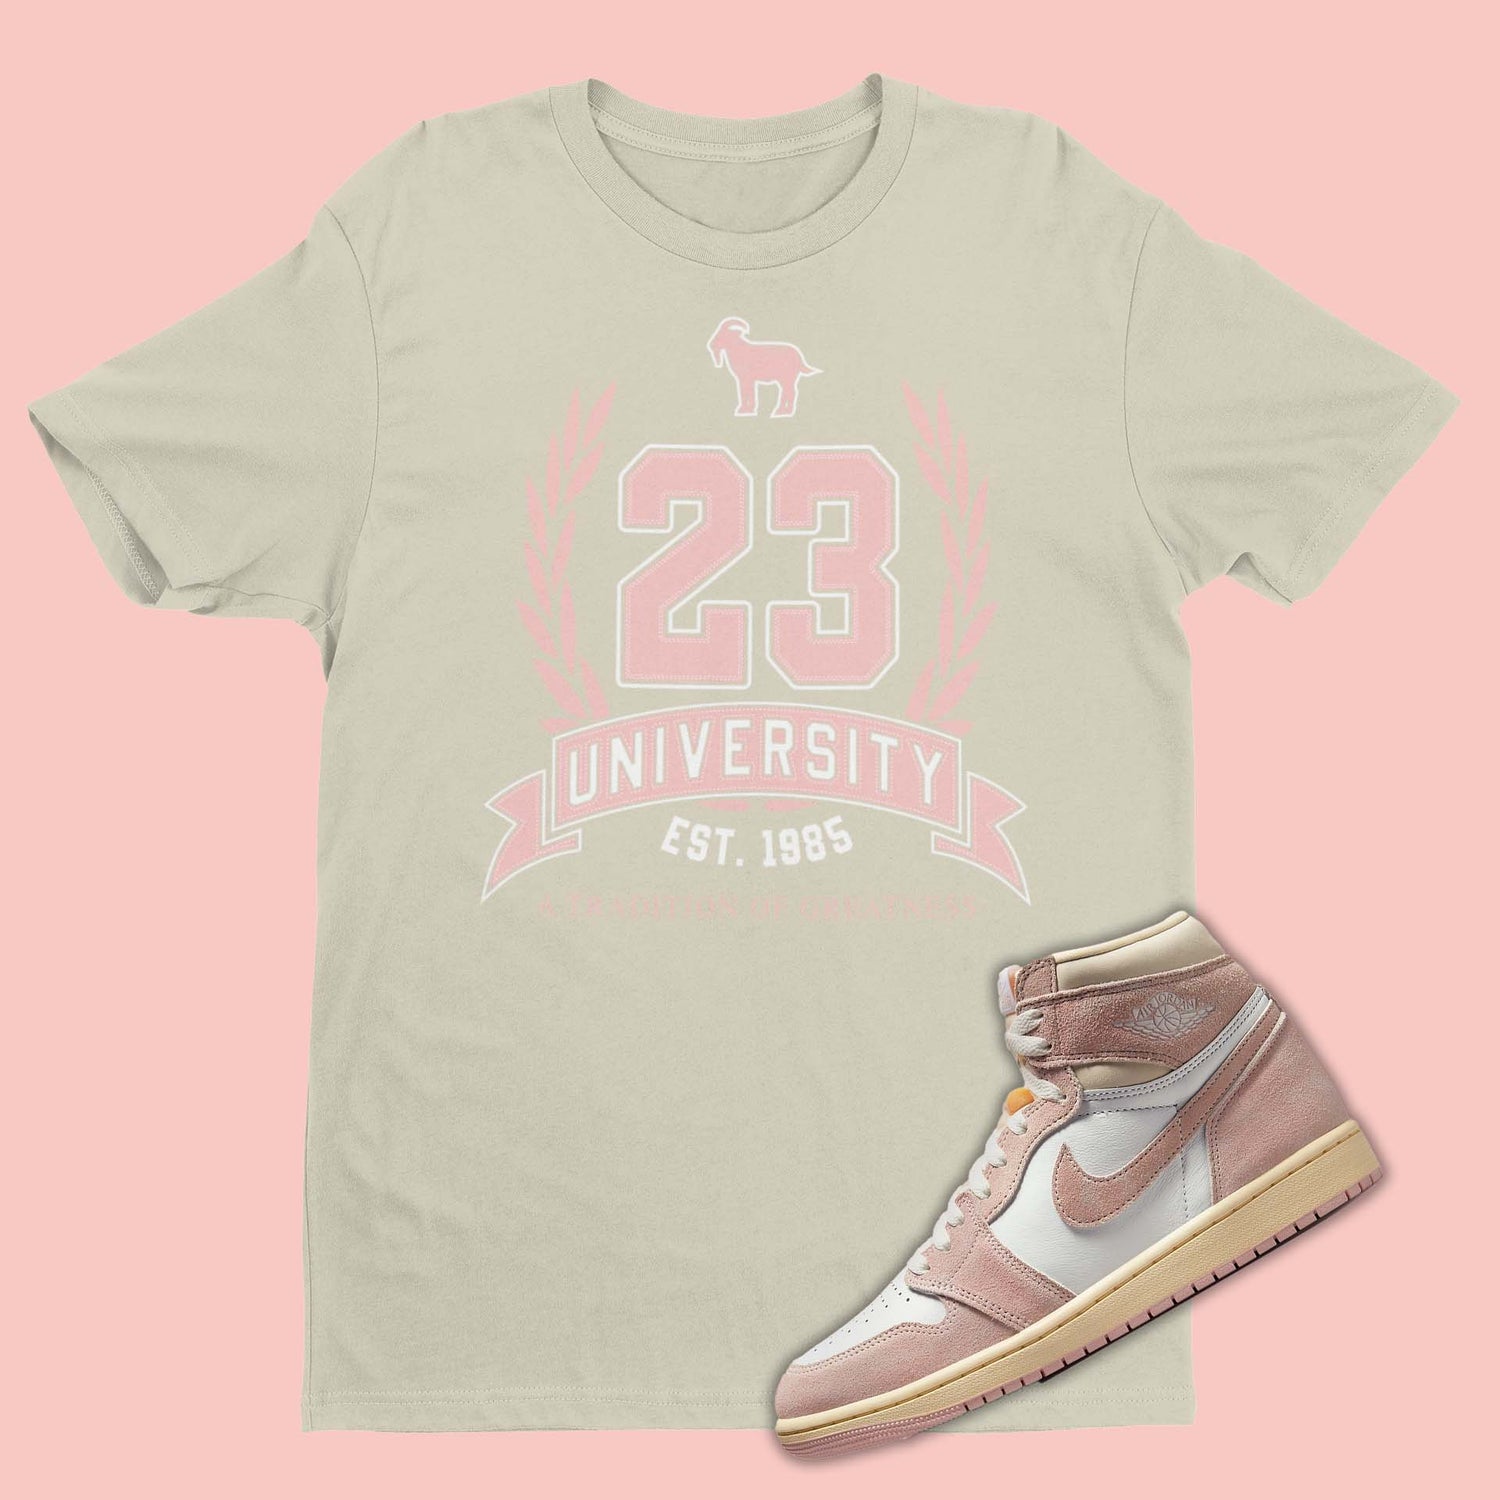 23 University Jordan 1 Washed Pink Matching T-Shirt